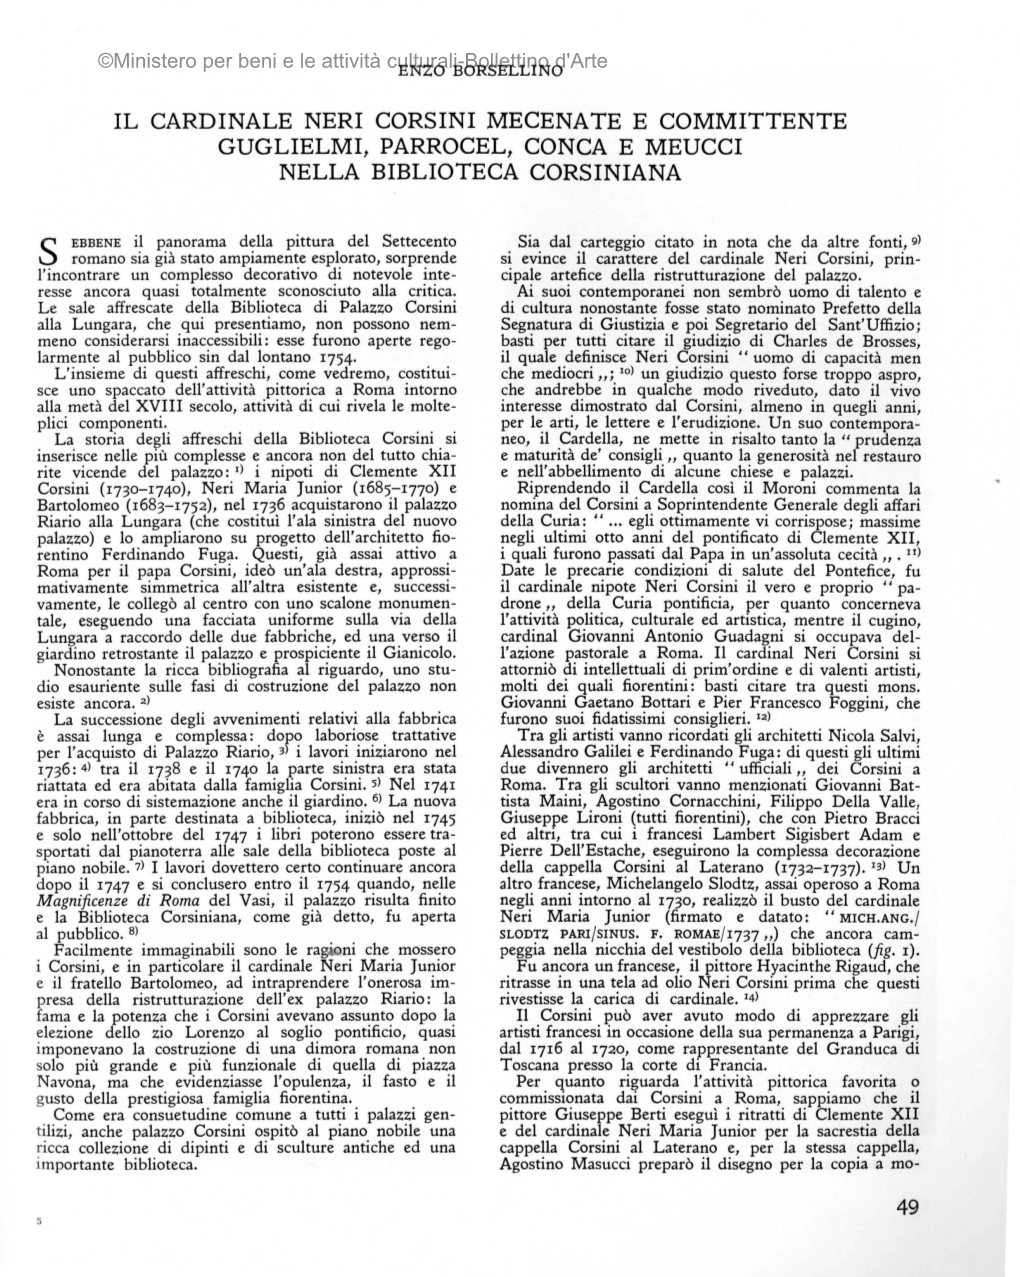 Il Cardinale Neri Corsini Mecenate E Committente Guglielmi, Parrocel, Conca E Meucci Nella Biblioteca Corsiniana 49